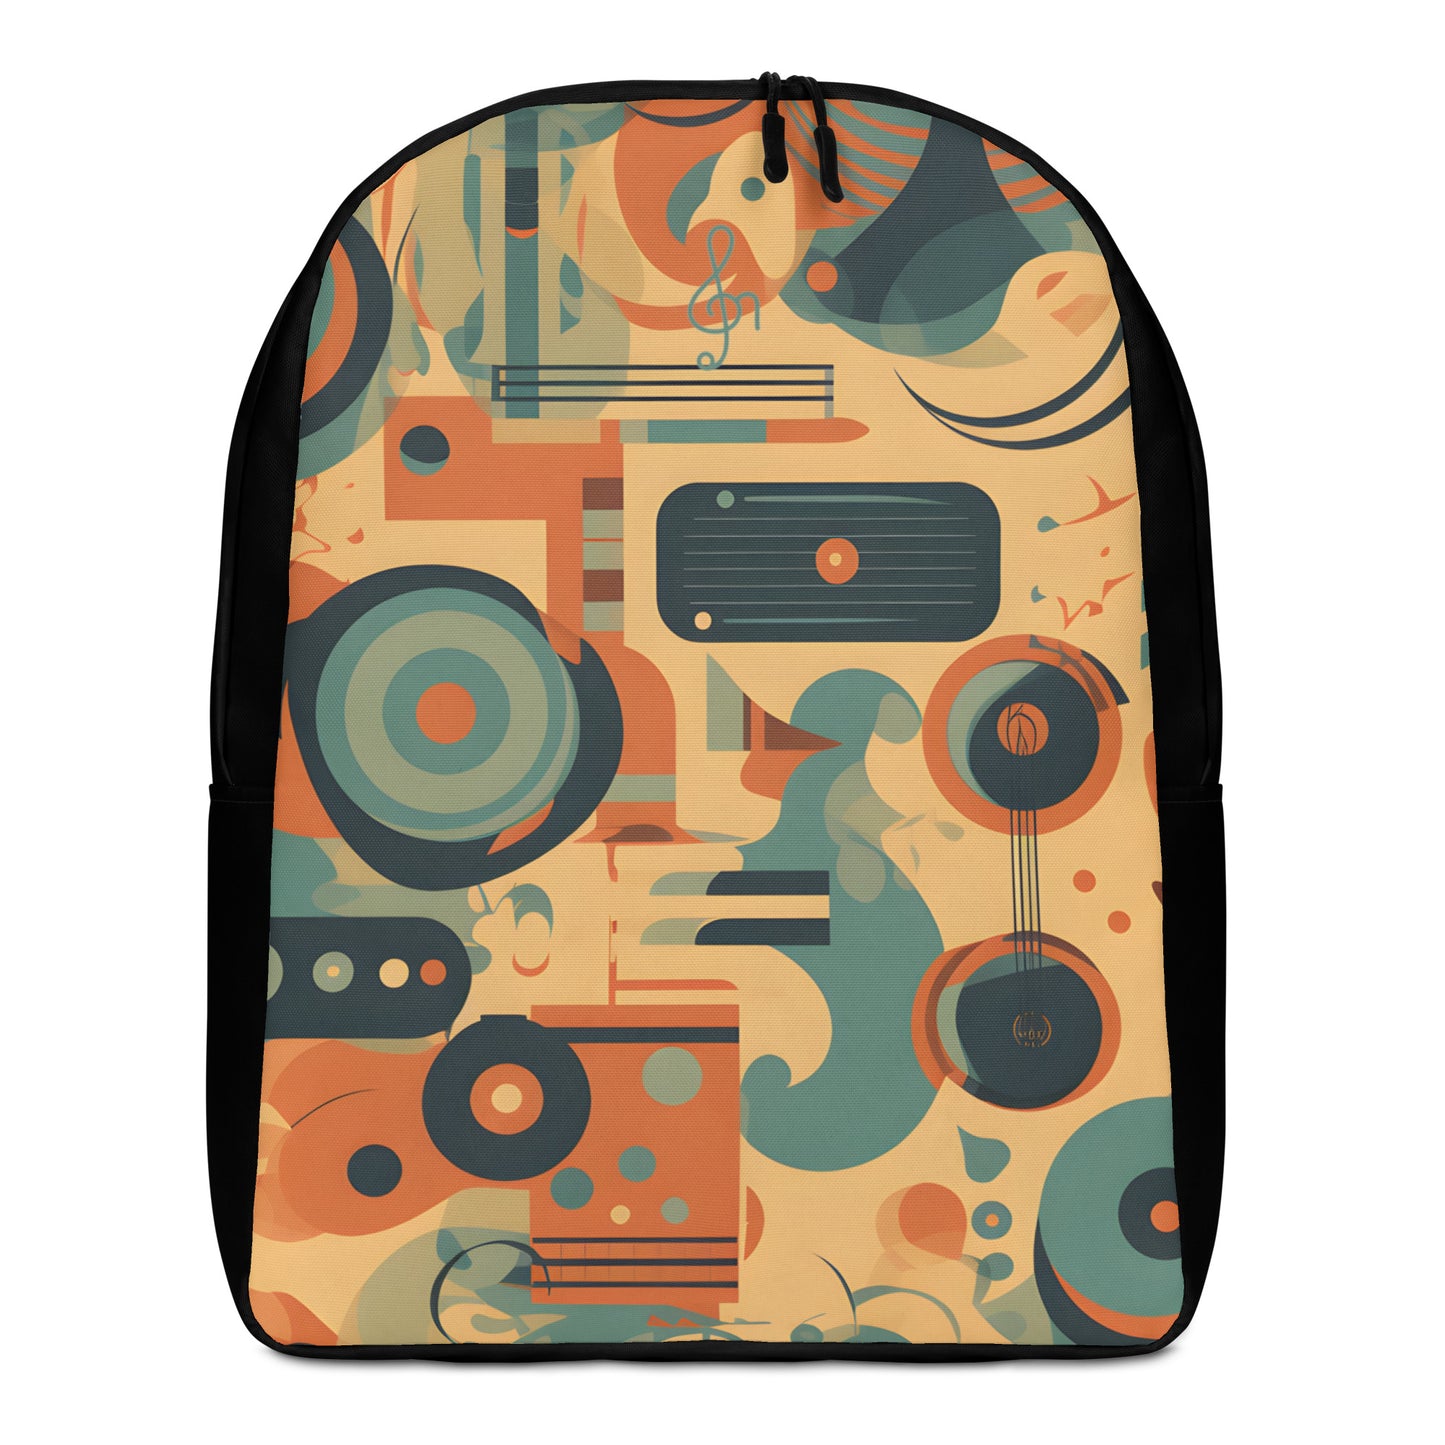 Minimalist Backpack Retro 6